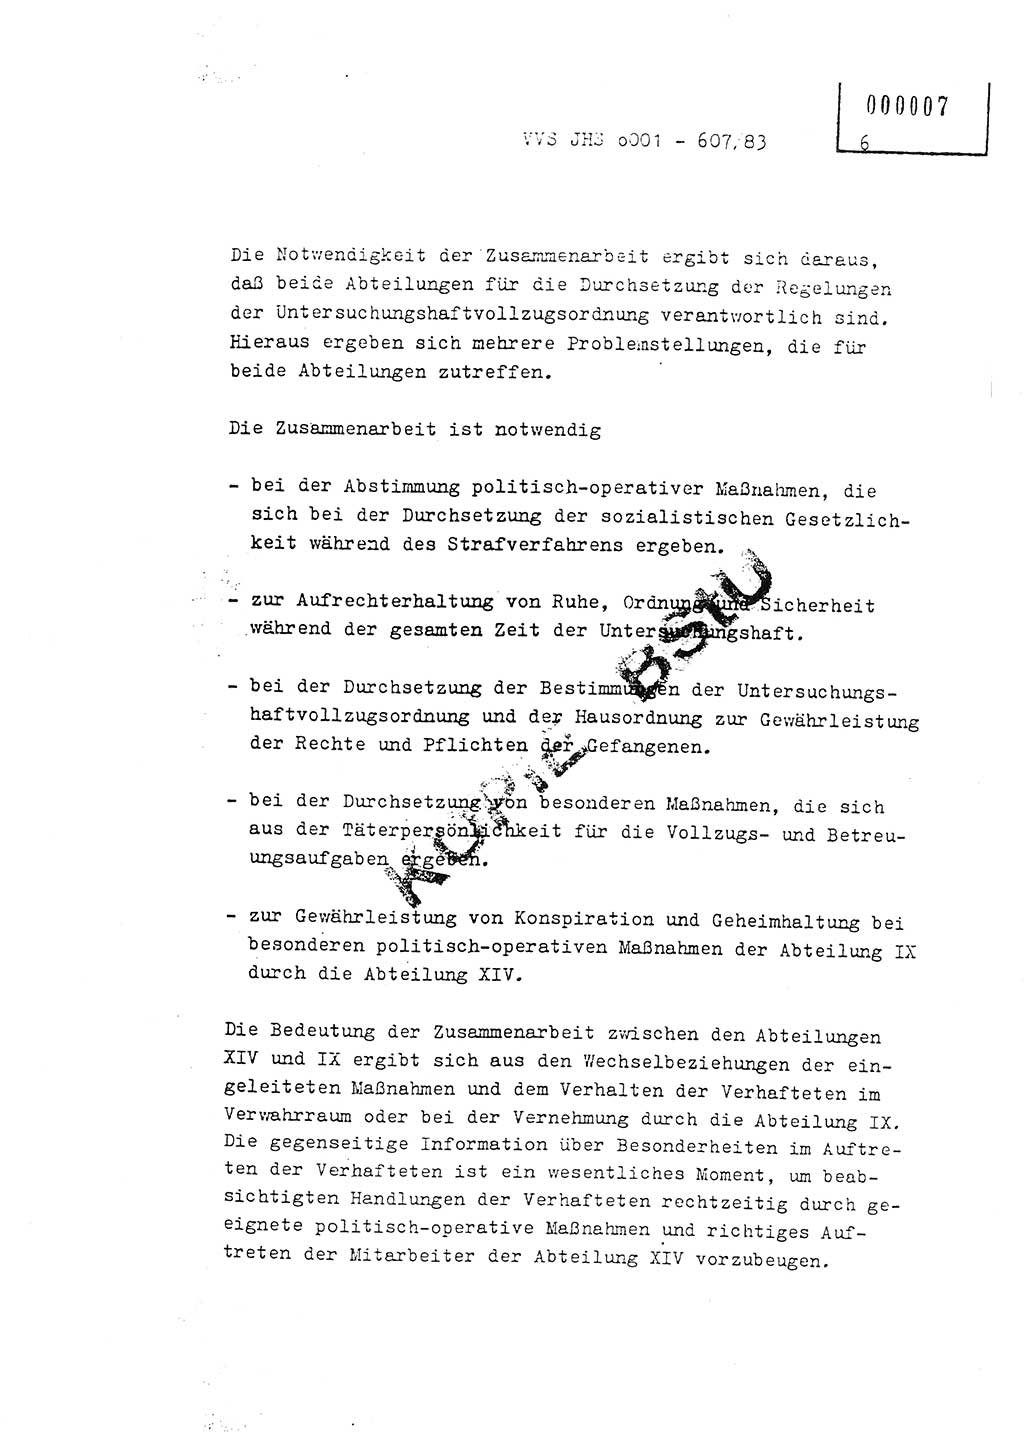 Fachschulabschlußarbeit Oberleutnant Hans-Joachim Saltmann (BV Rostock Abt. ⅩⅣ), Ministerium für Staatssicherheit (MfS) [Deutsche Demokratische Republik (DDR)], Juristische Hochschule (JHS), Vertrauliche Verschlußsache (VVS) o001-607/83, Potsdam 1983, Seite 6 (FS-Abschl.-Arb. MfS DDR JHS VVS o001-607/83 1983, S. 6)